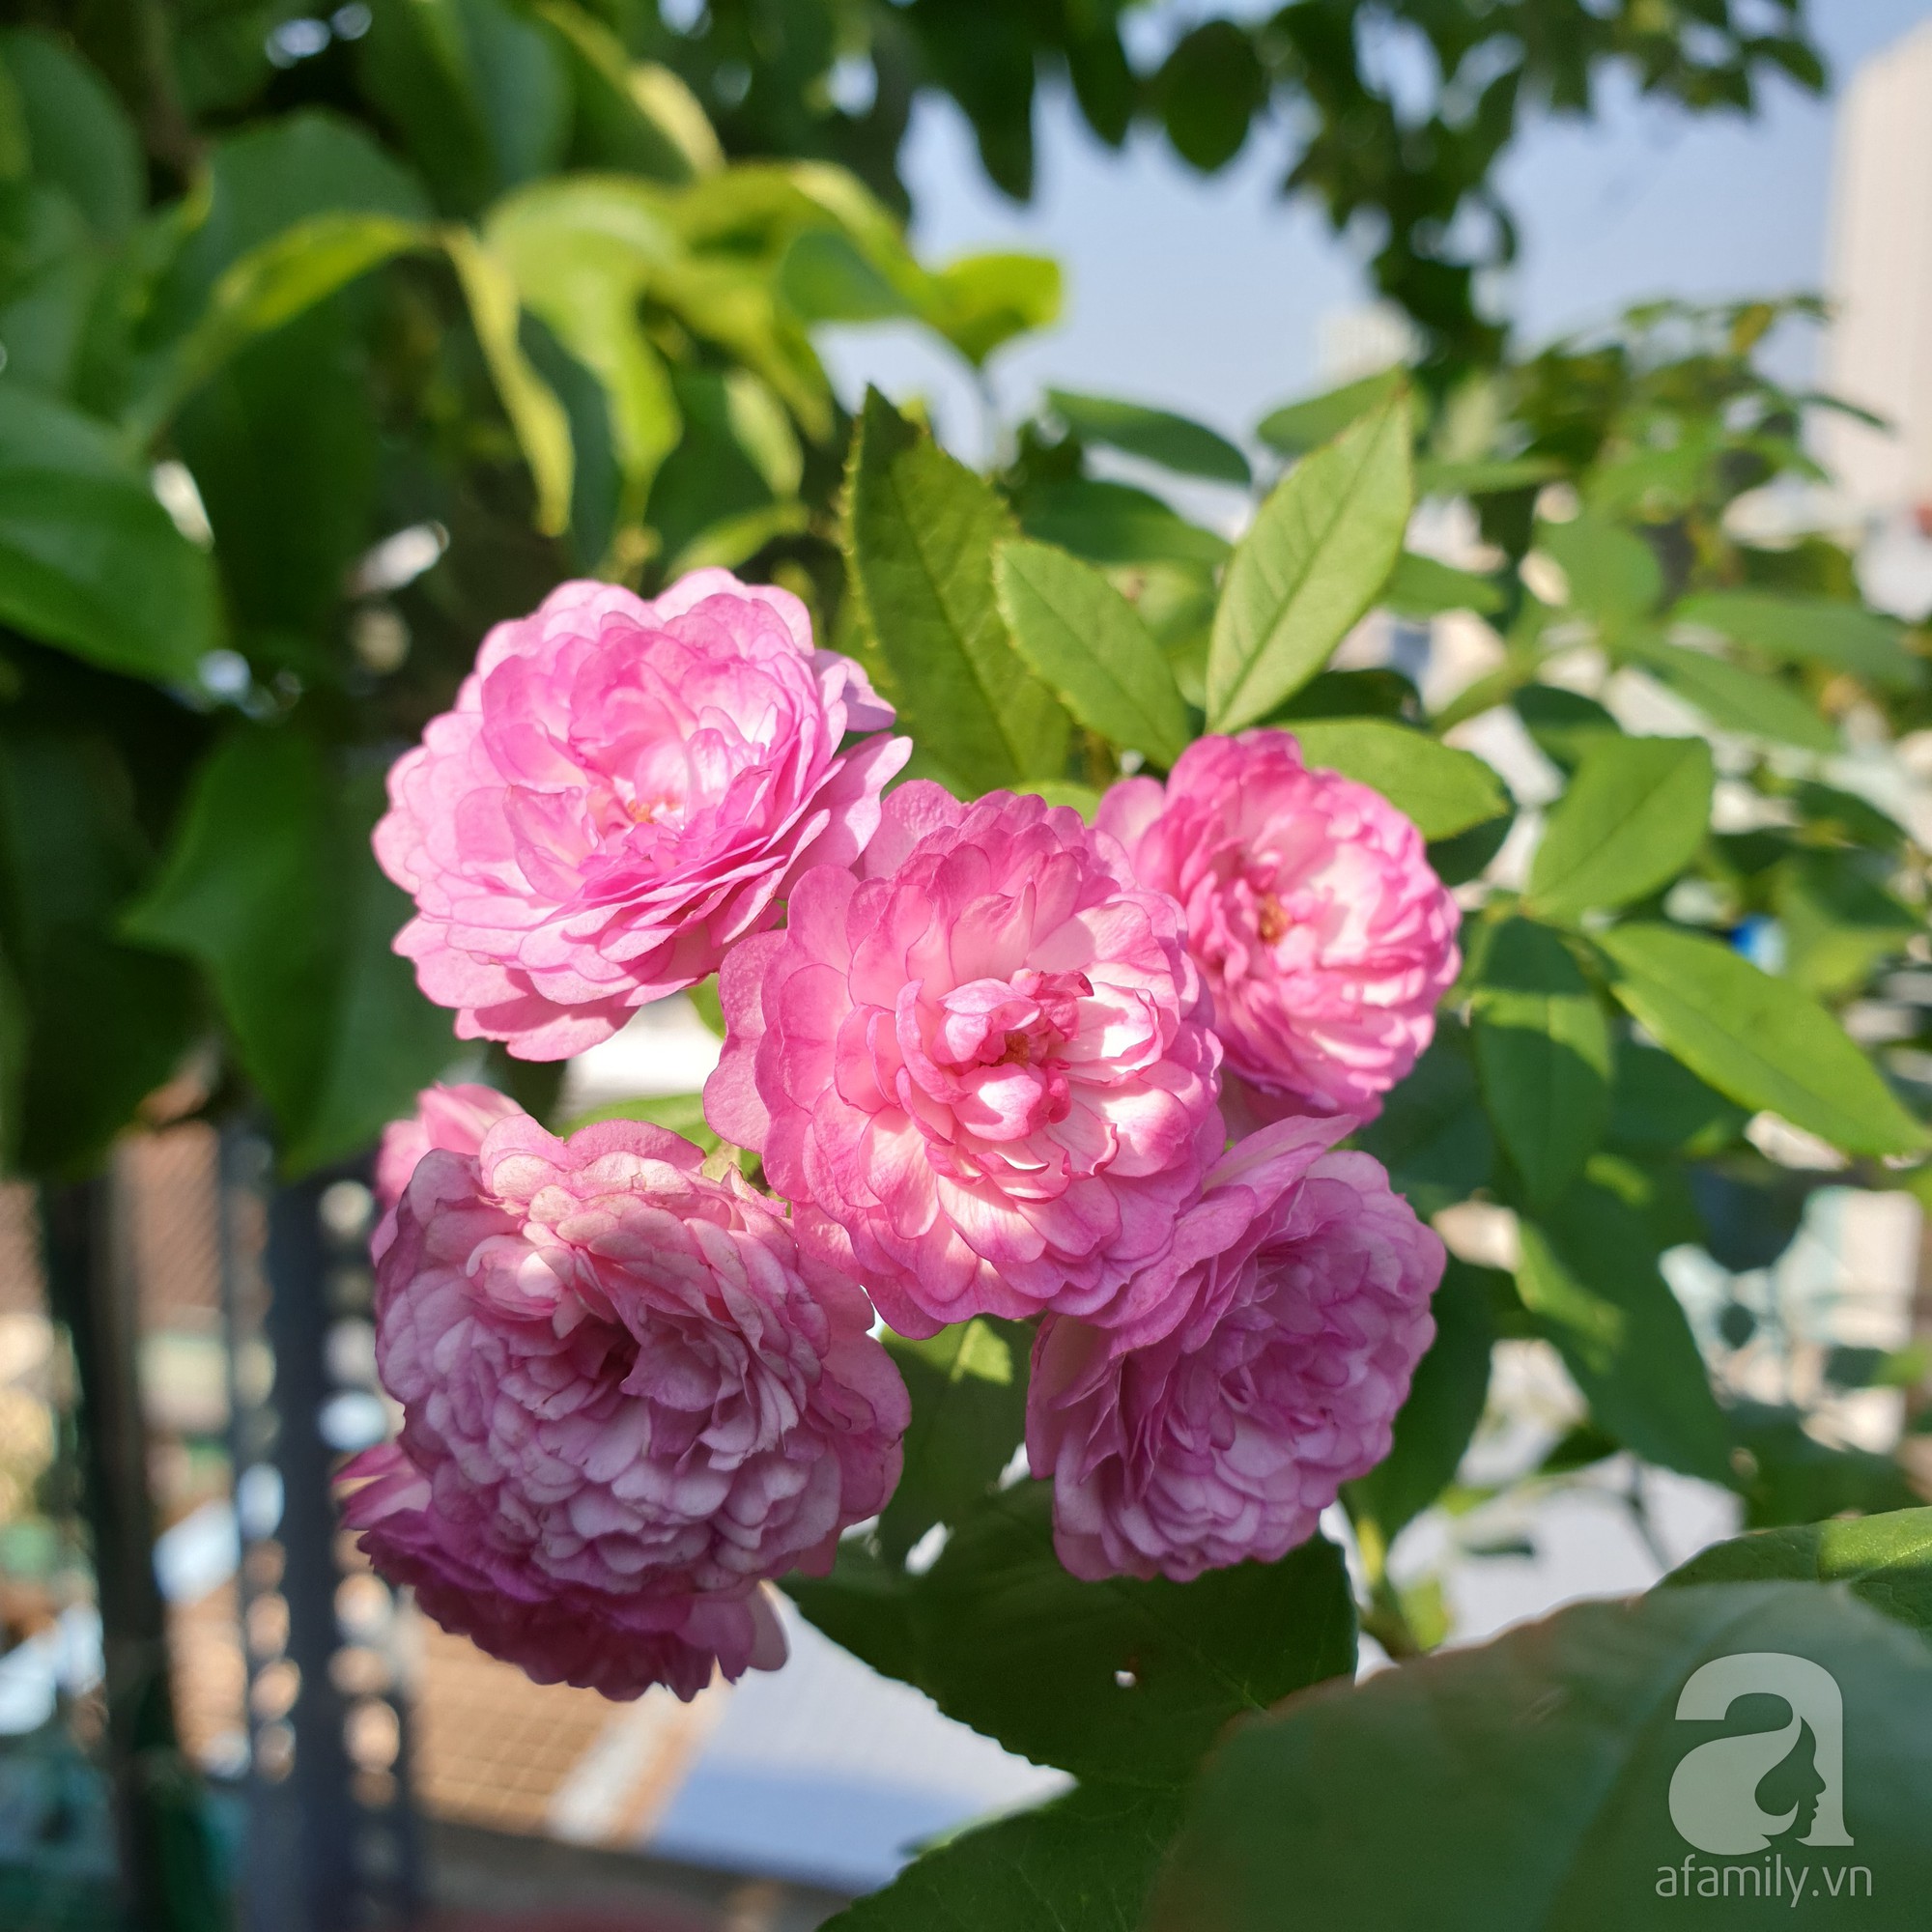 Vườn hồng trên sân thượng rực rỡ sắc màu của chàng trai 8x siêu đảm ở Sài Gòn - Ảnh 7.